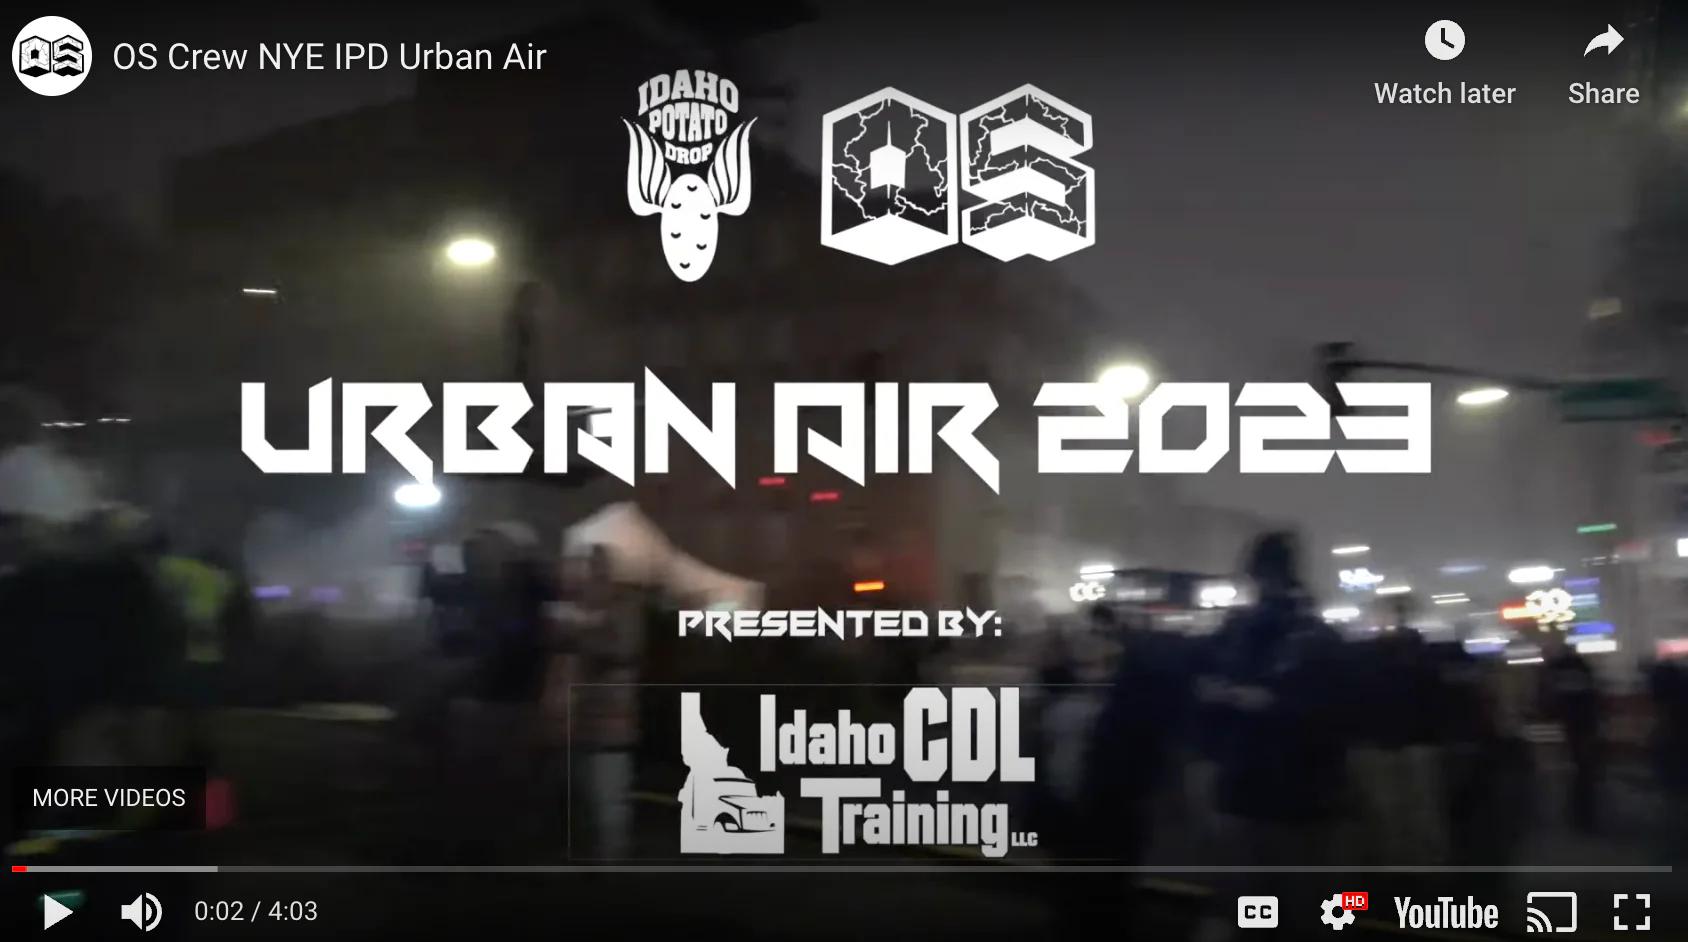 OS Crew NYE Urban Air Video Image